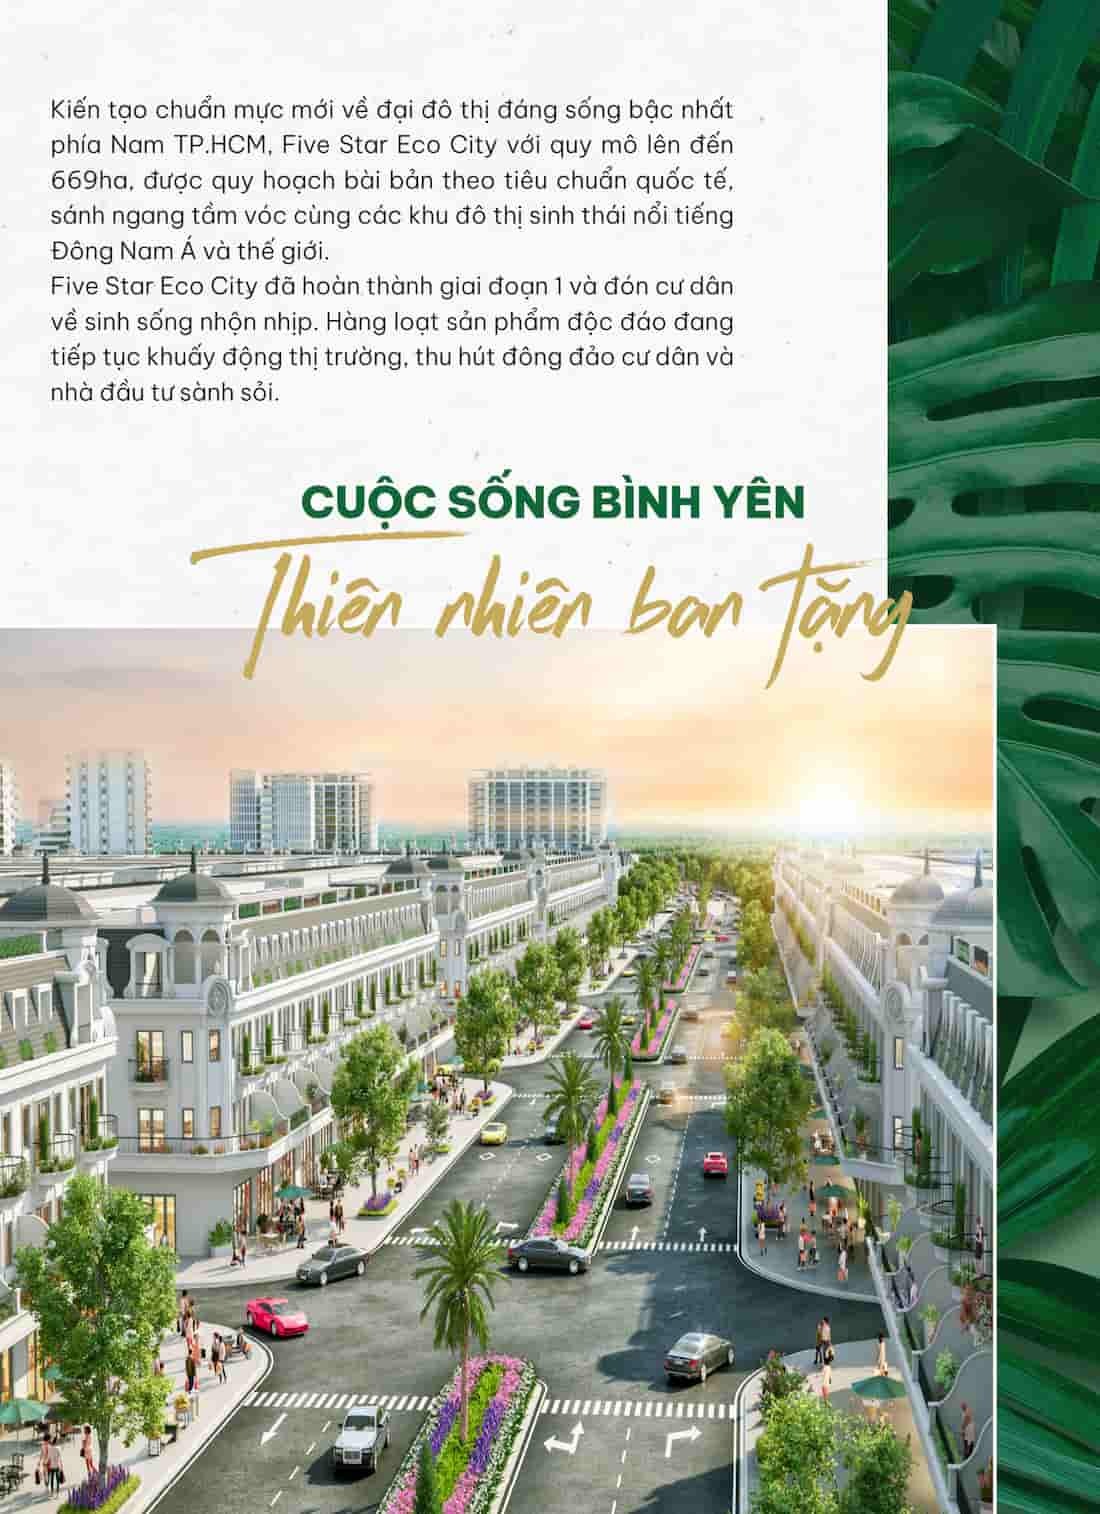 a-Tong-quan-Five-Star-Eco-City-can-giuoc-2 (5).jpg